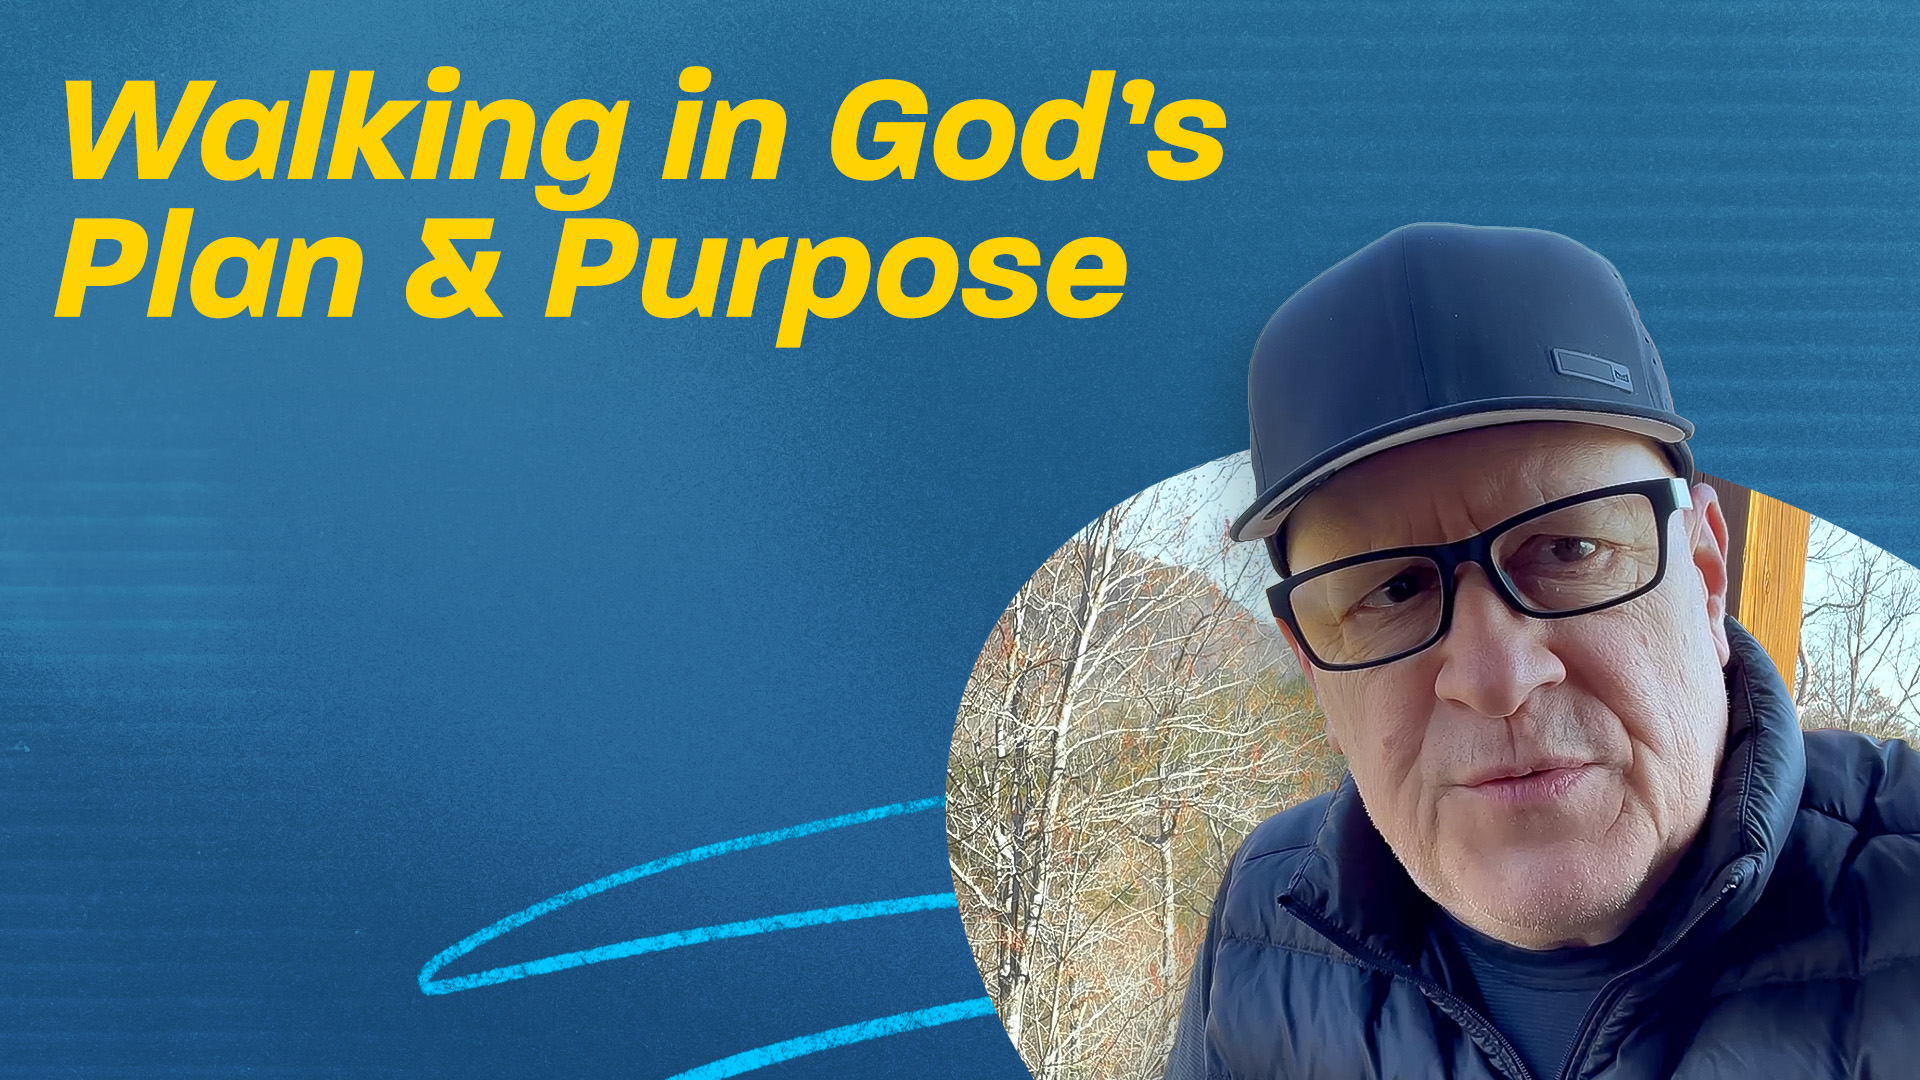 Walking in God’s Plan & Purpose